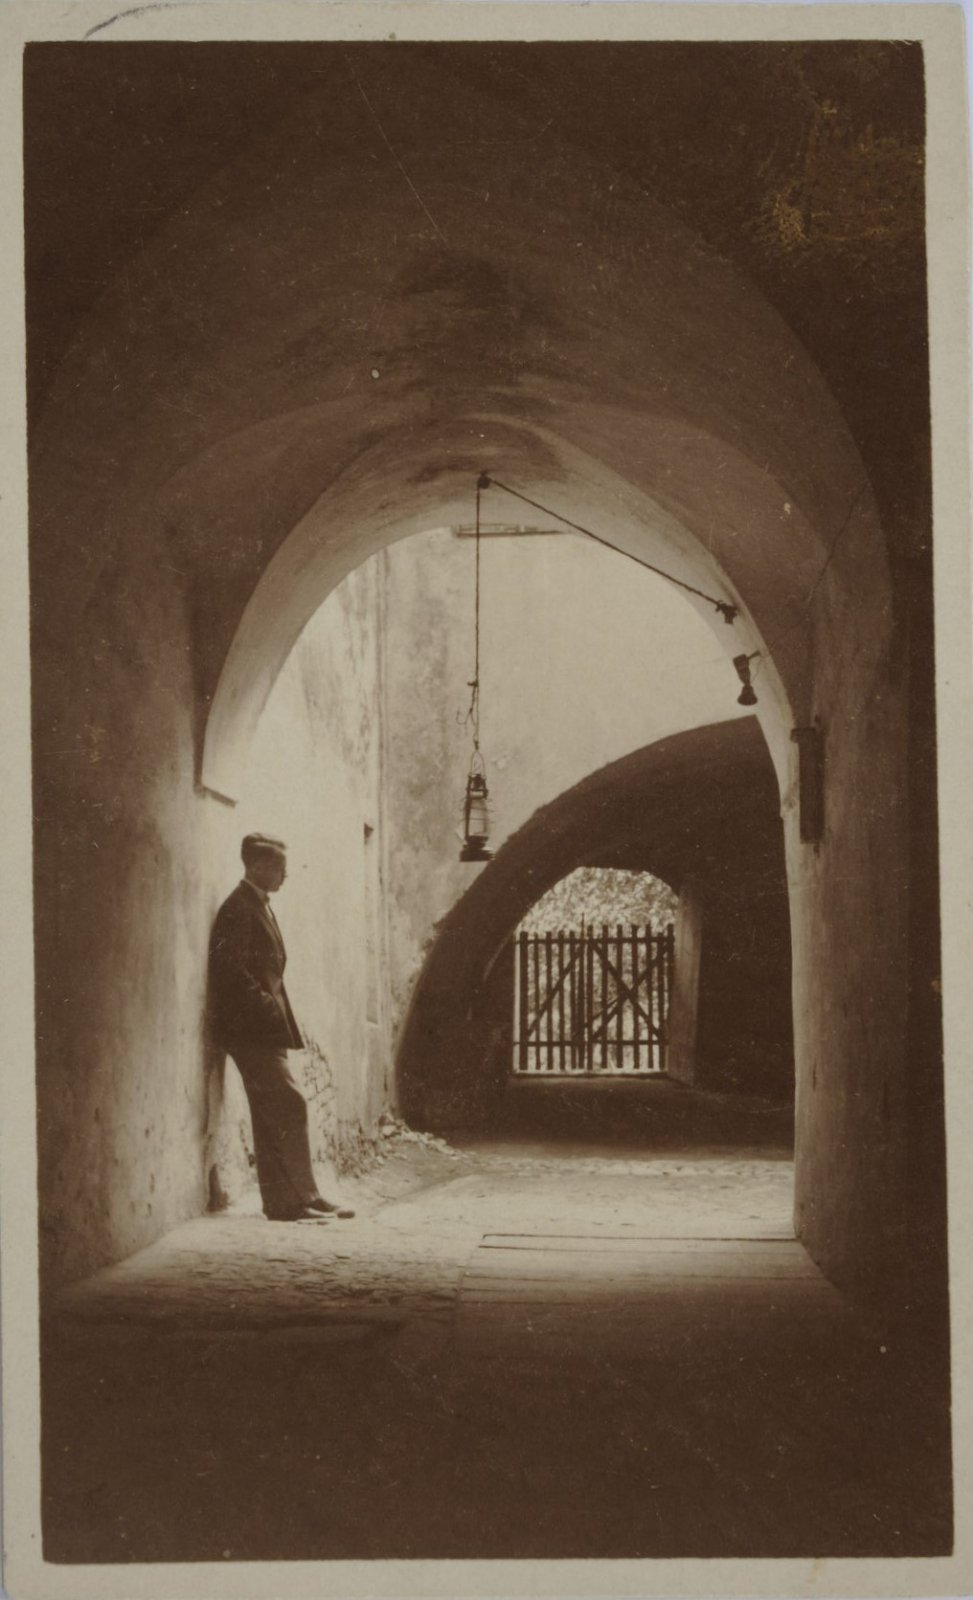 Józef Czechowicz w bramie na ulicy Jezuickiej 19 (naprzeciwko kina), fotografia czarno-biała, bez daty, zbiory Muzeum Narodowego w Lublinie.